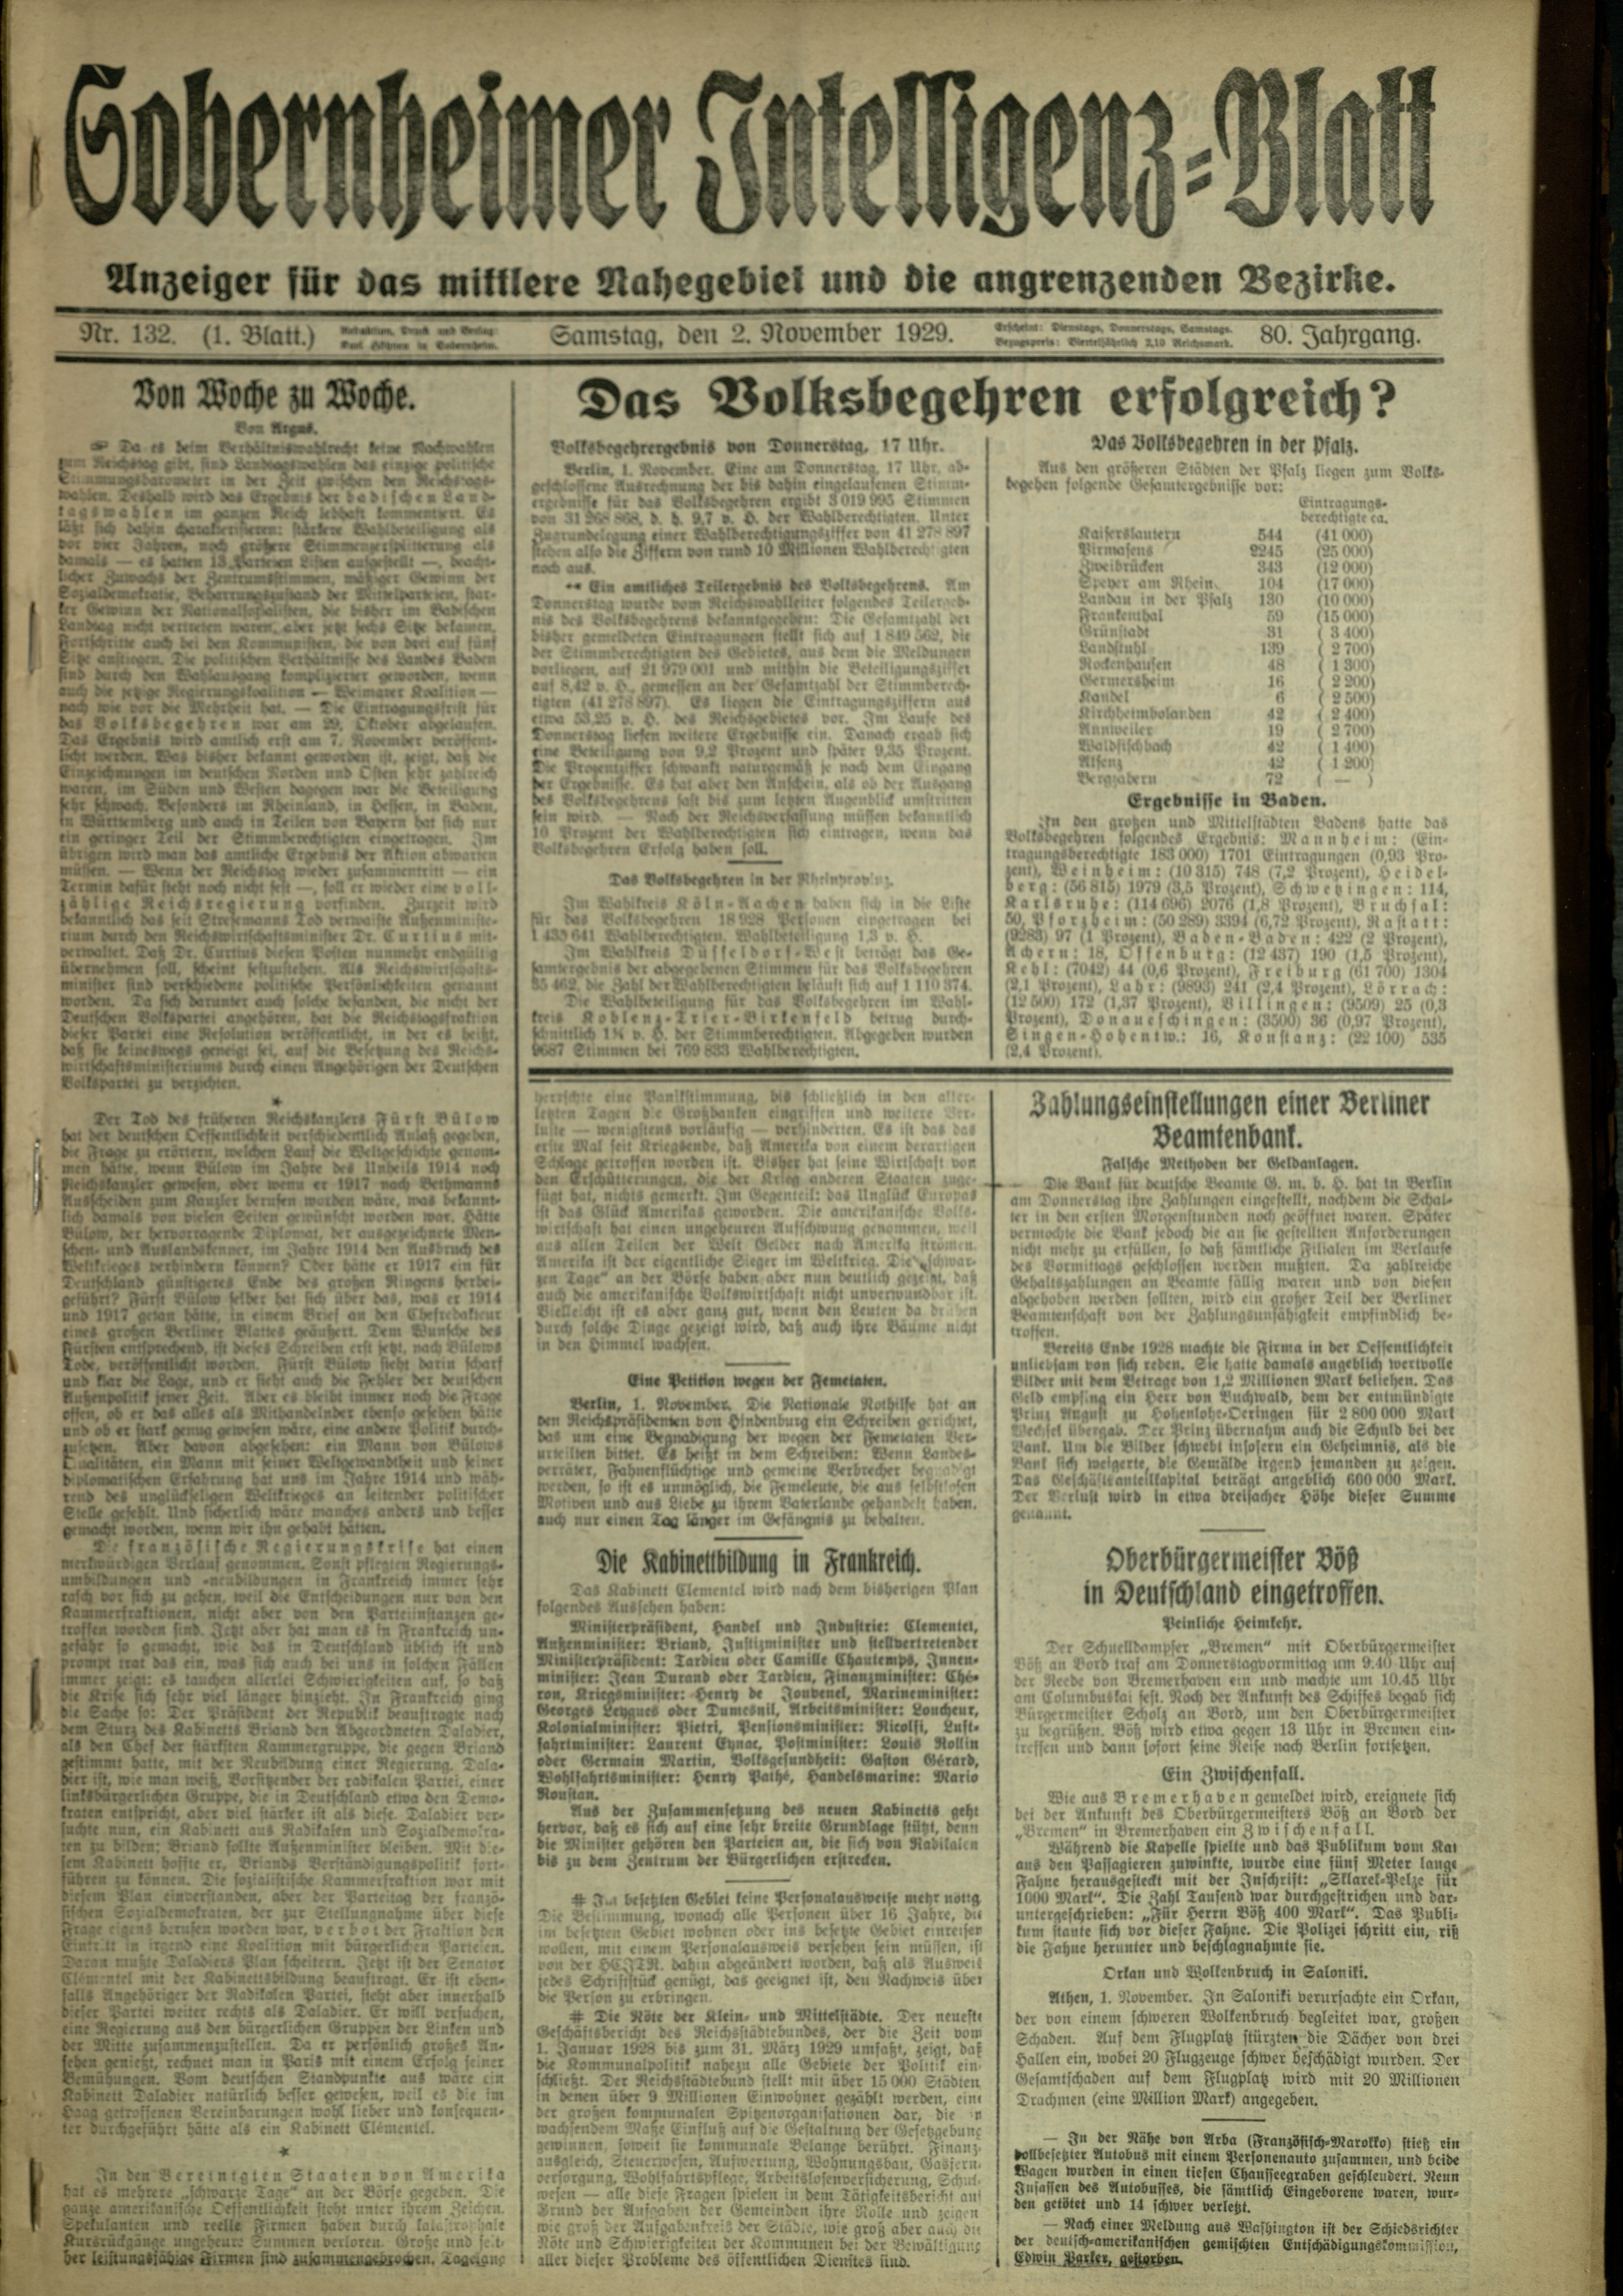 Zeitung: Sobernheimer Intelligenzblatt; November 1929, Jg. 80 Nr. 132 (Heimatmuseum Bad Sobernheim CC BY-NC-SA)